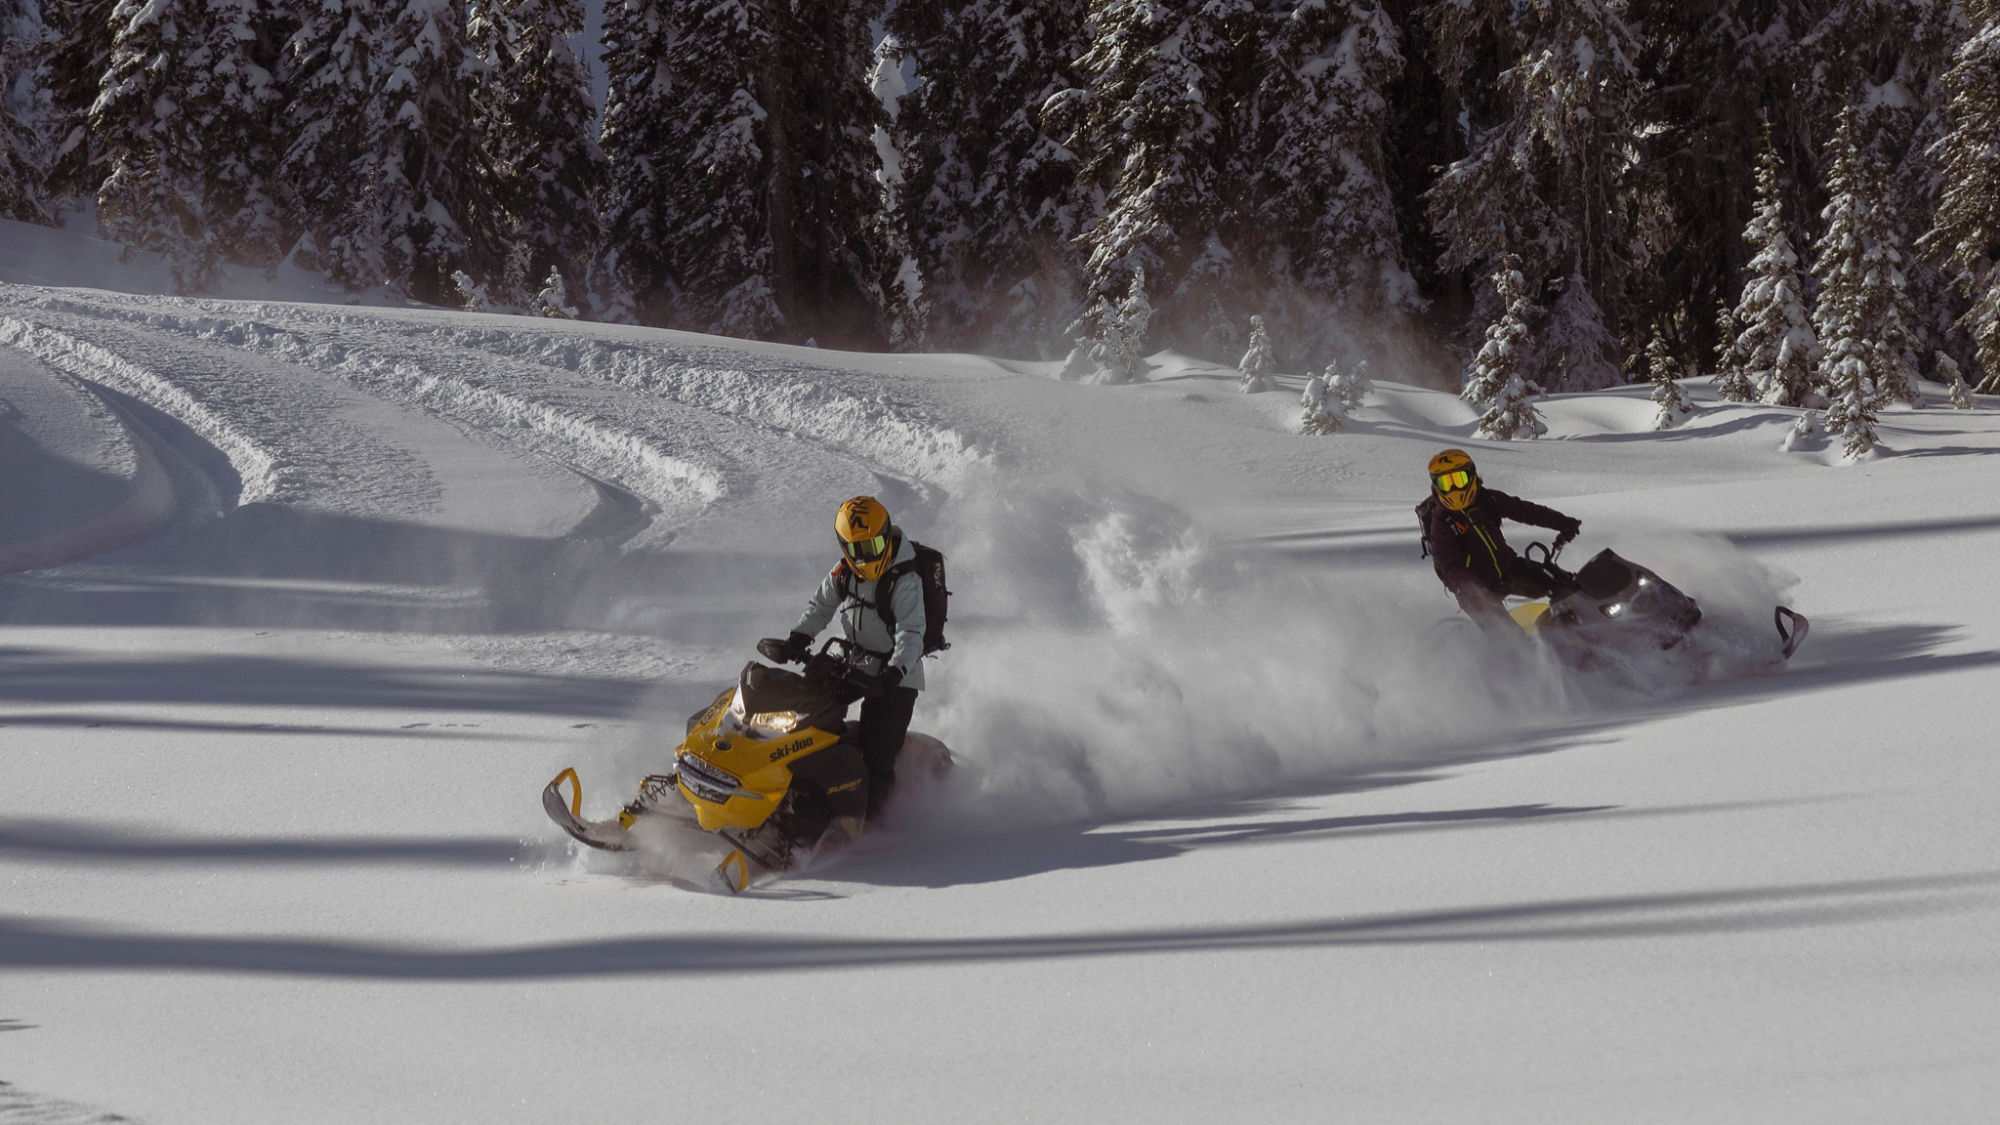 Deux motoneiges de neige profonde de Ski-Doo zig-zaguant dans la neige